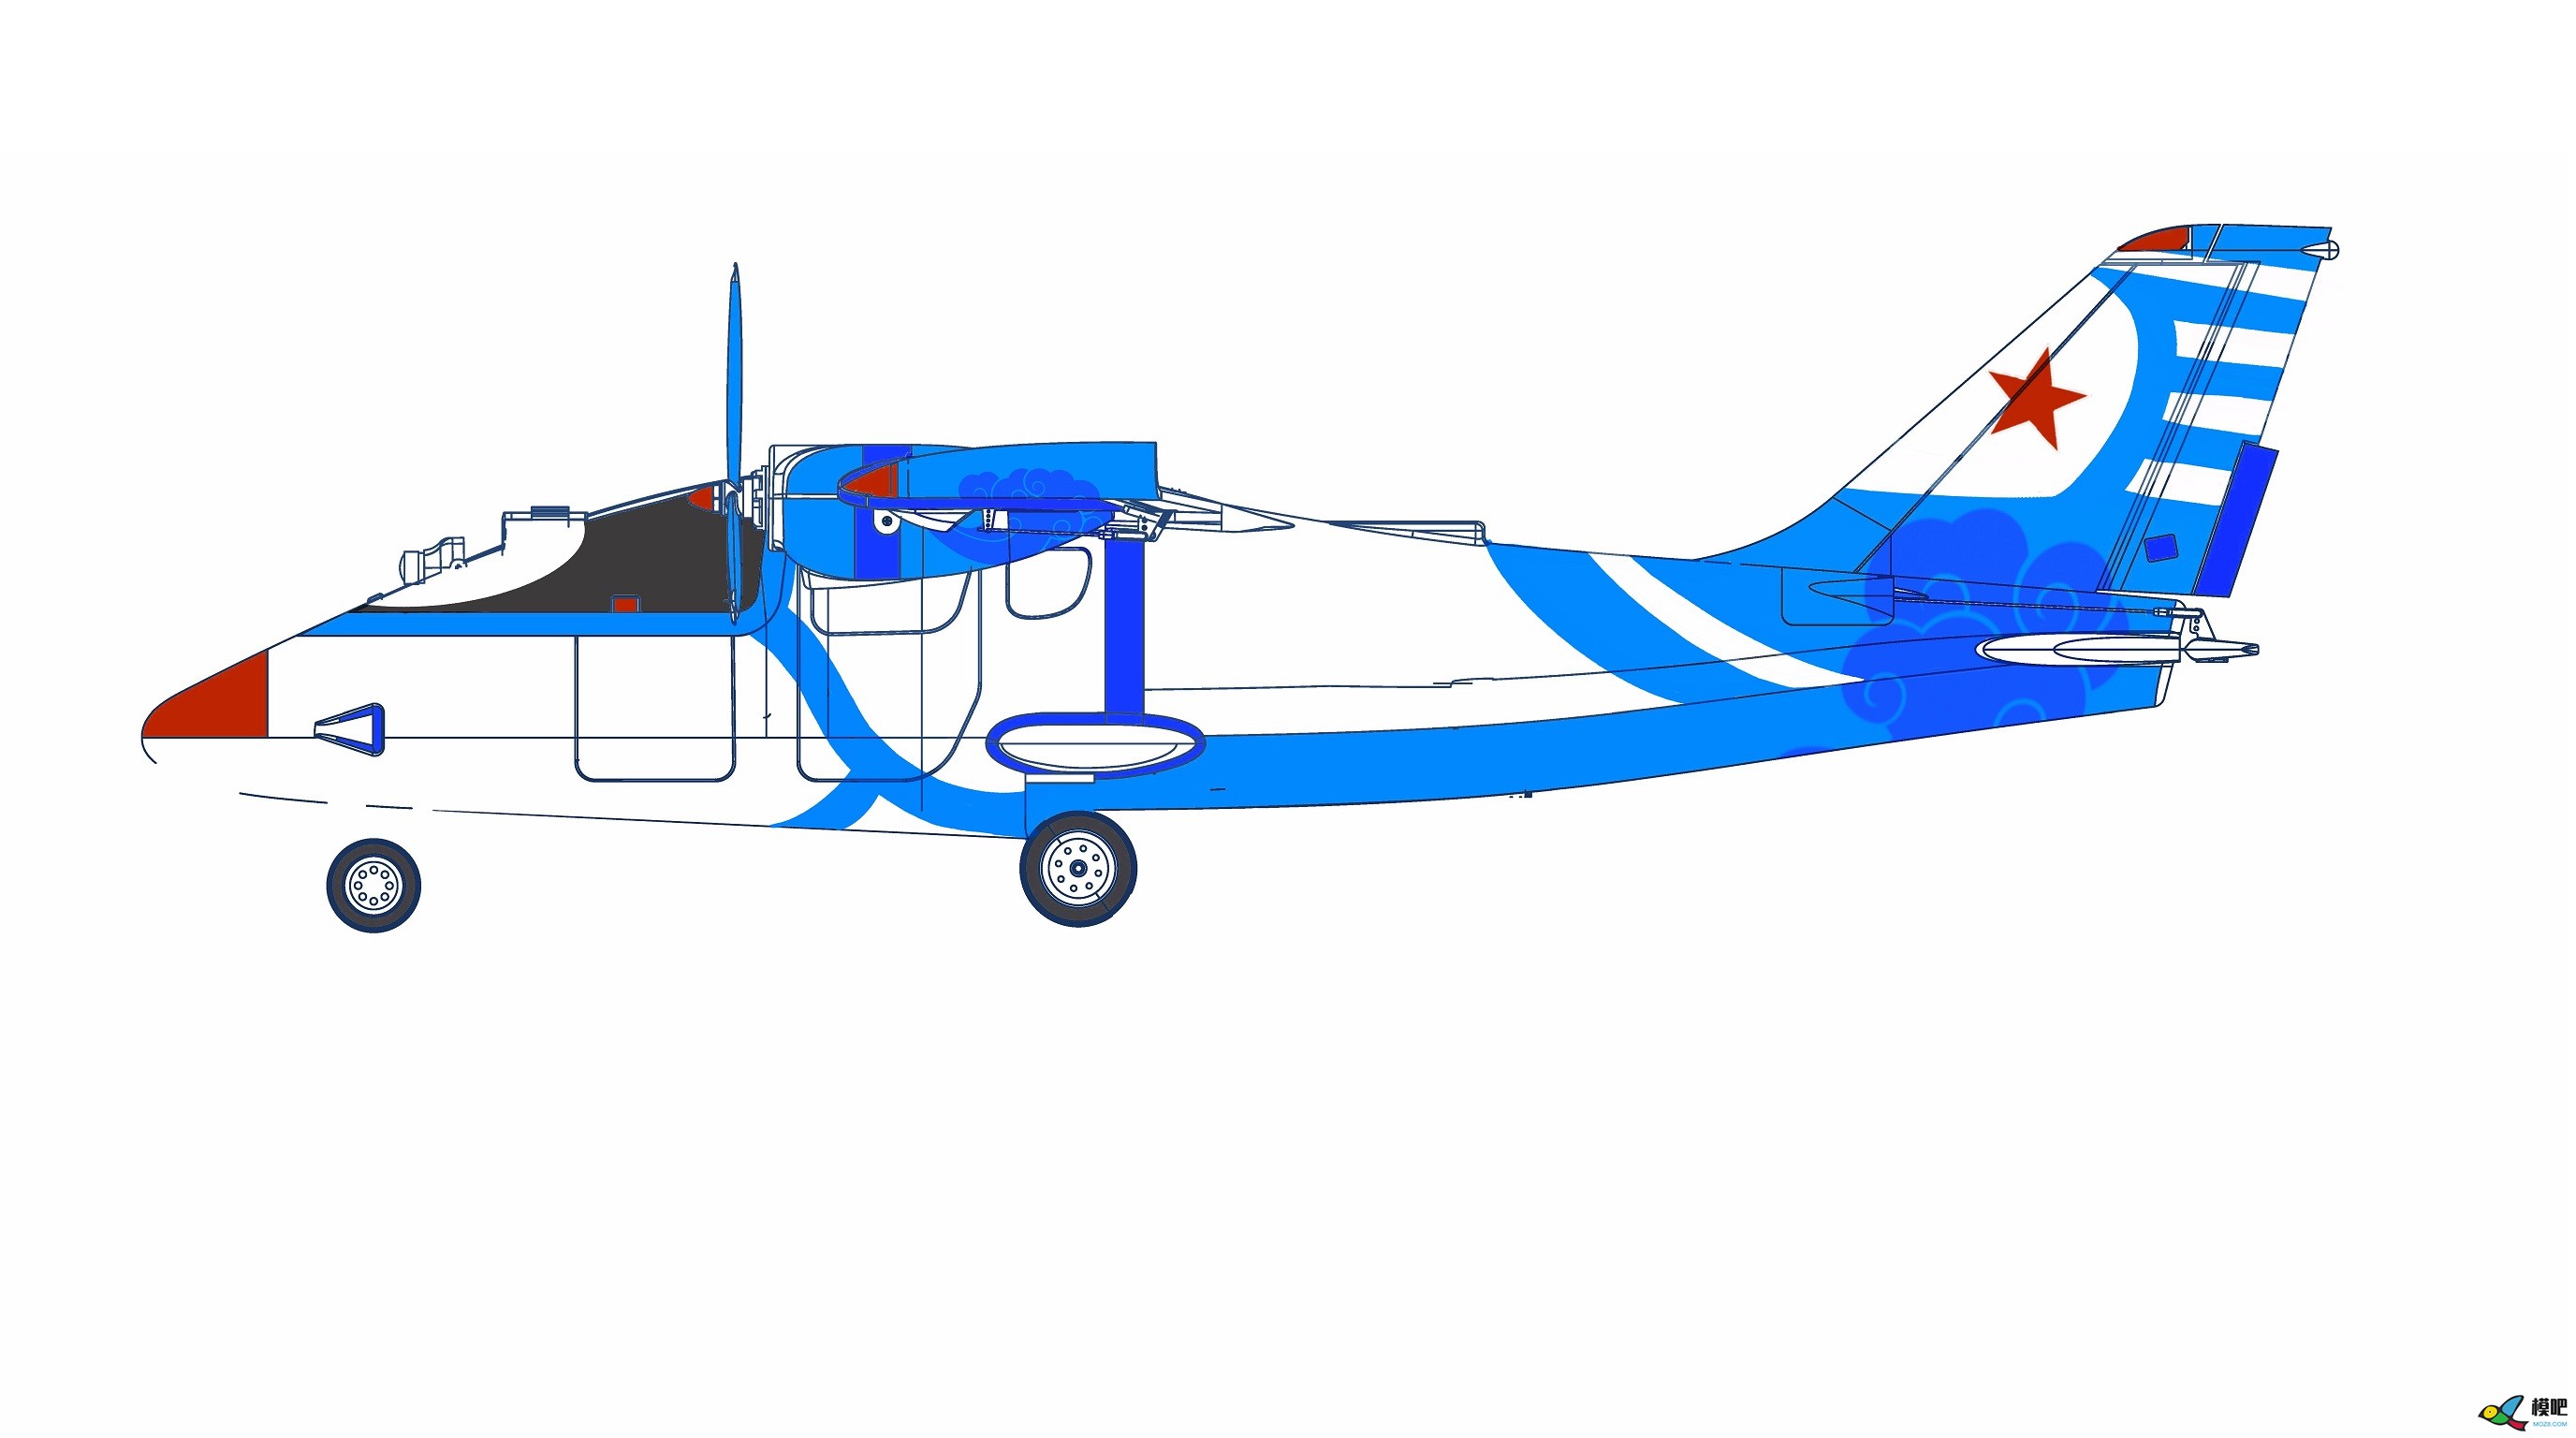 2020年第七期免费送模型：中航电Binary班纳瑞FPV飞机涂装大赛  作者:飞舞天水间 1546 